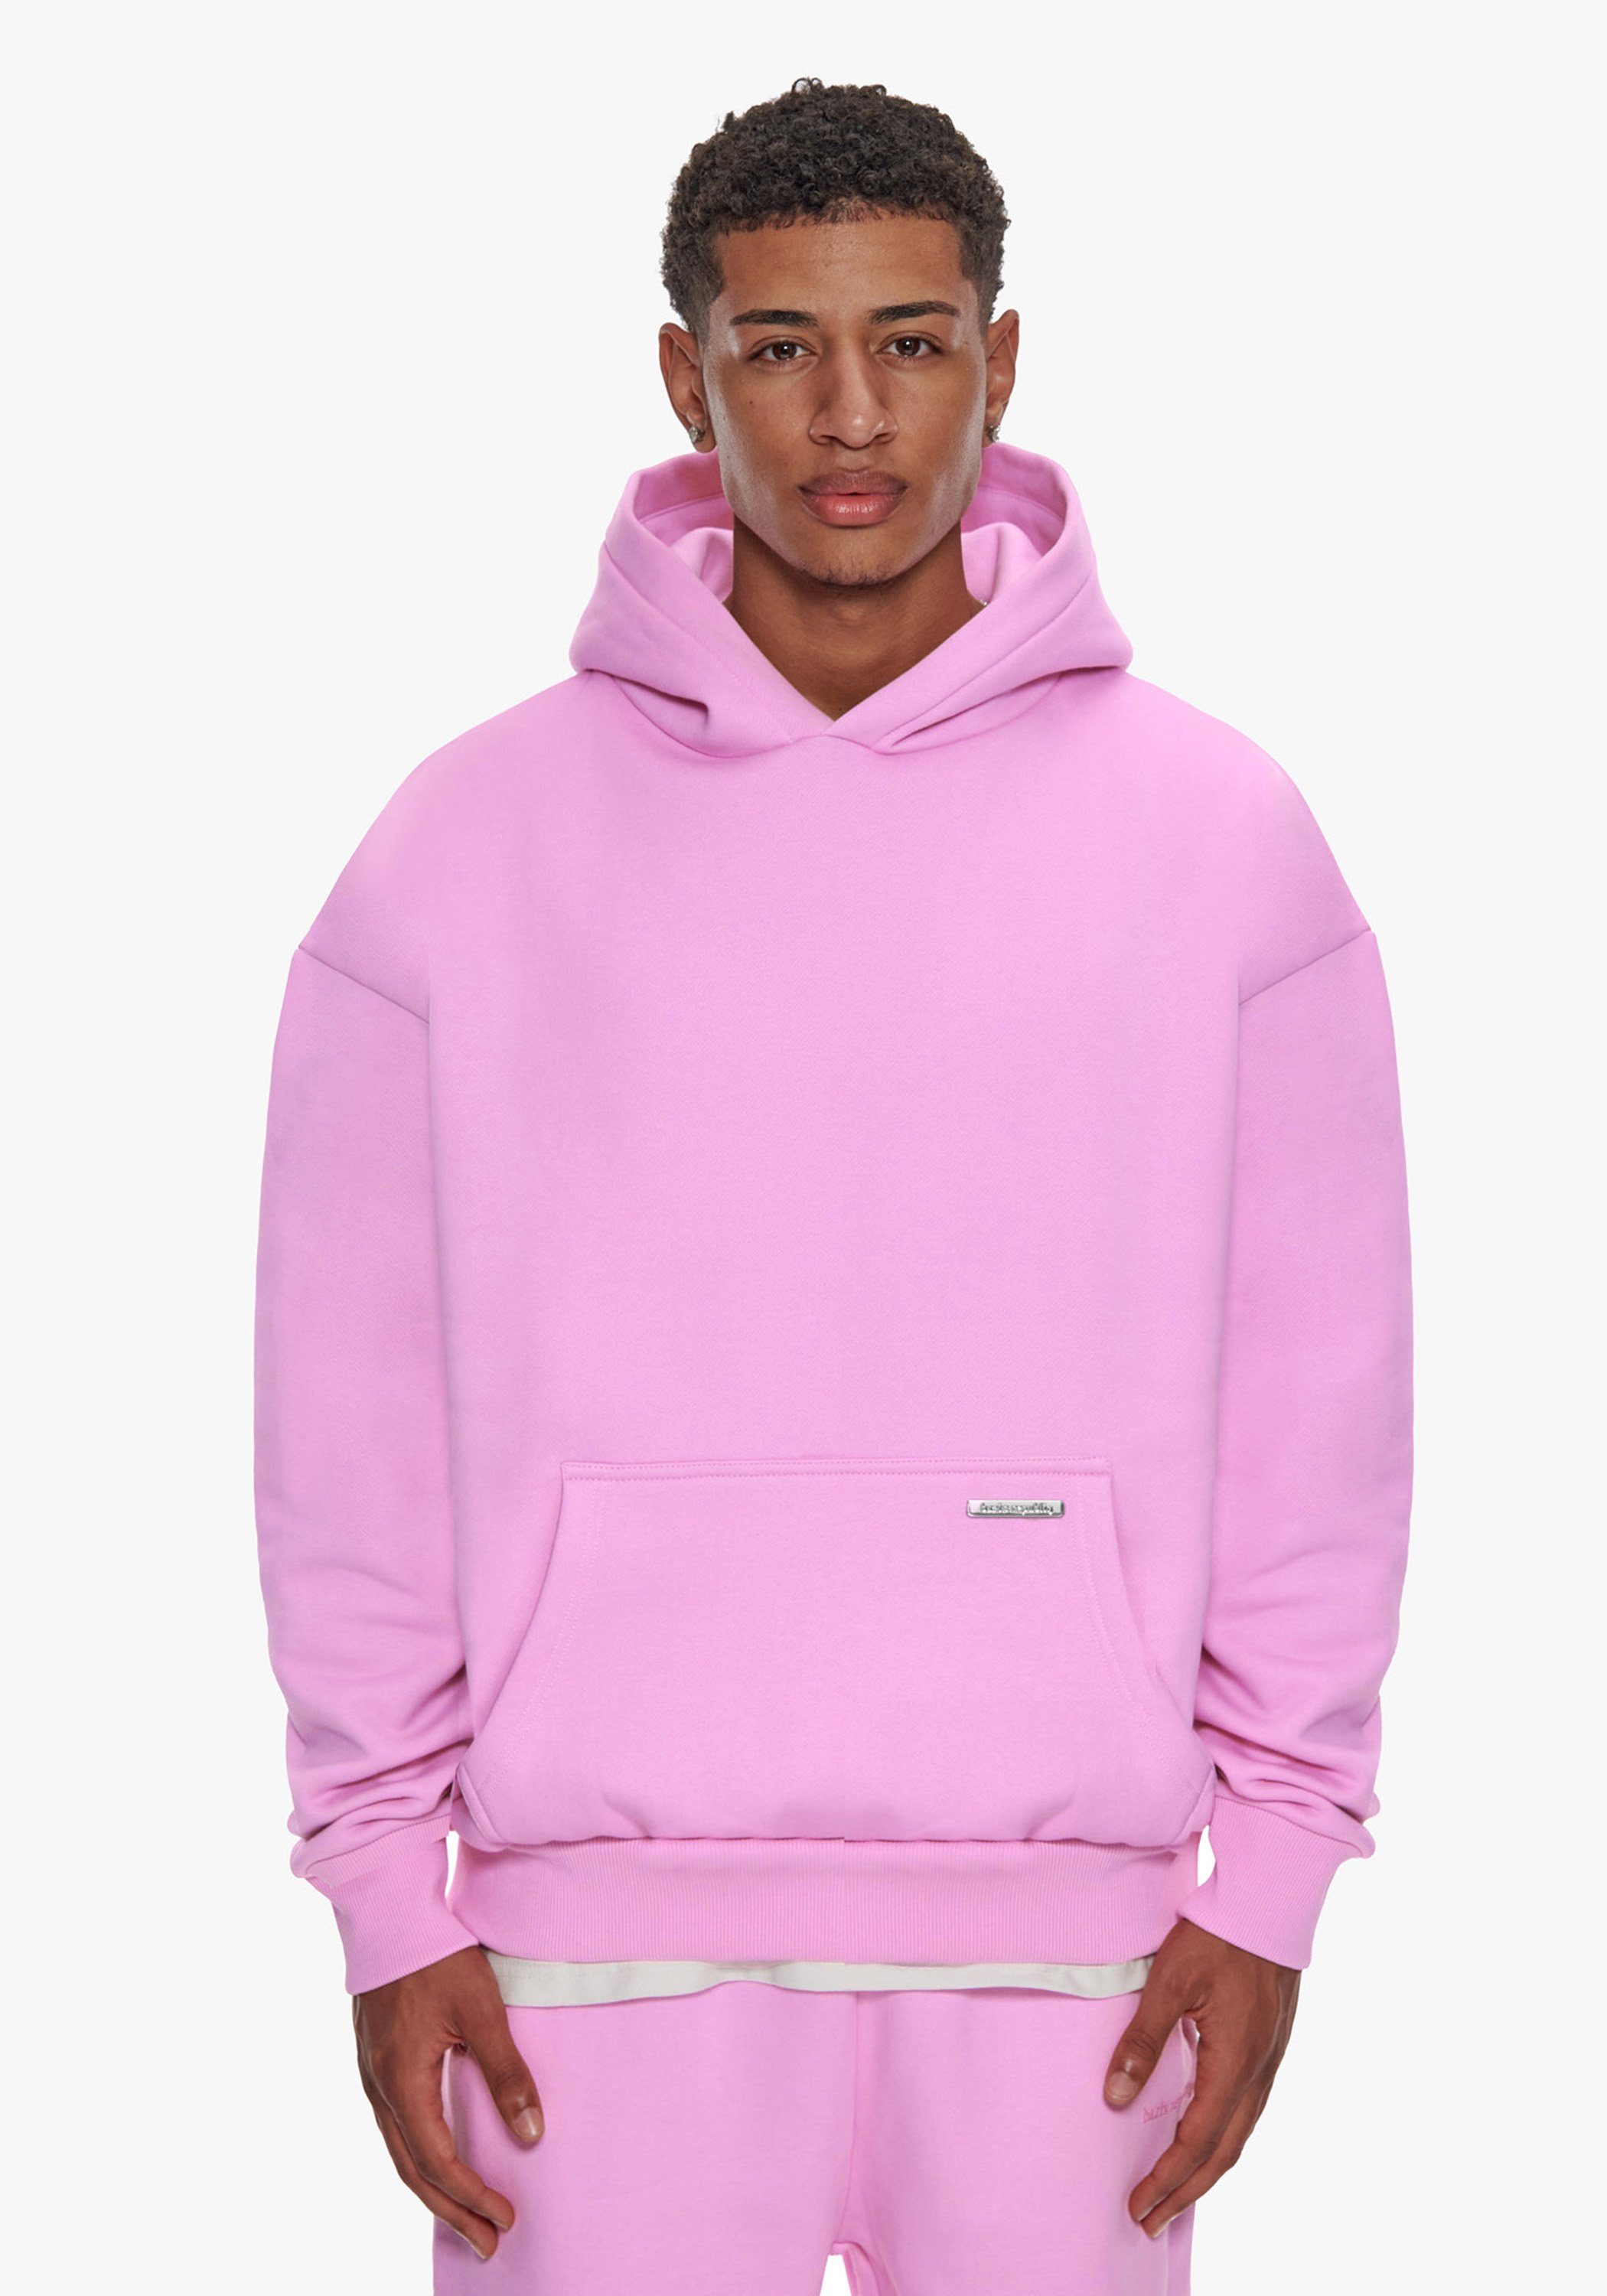 Dropsize Hoodie BR-H-1 Heavy Hoodie Herren Oversize 430 GSM Kapuzen-Pullover Herren Sweater Pink